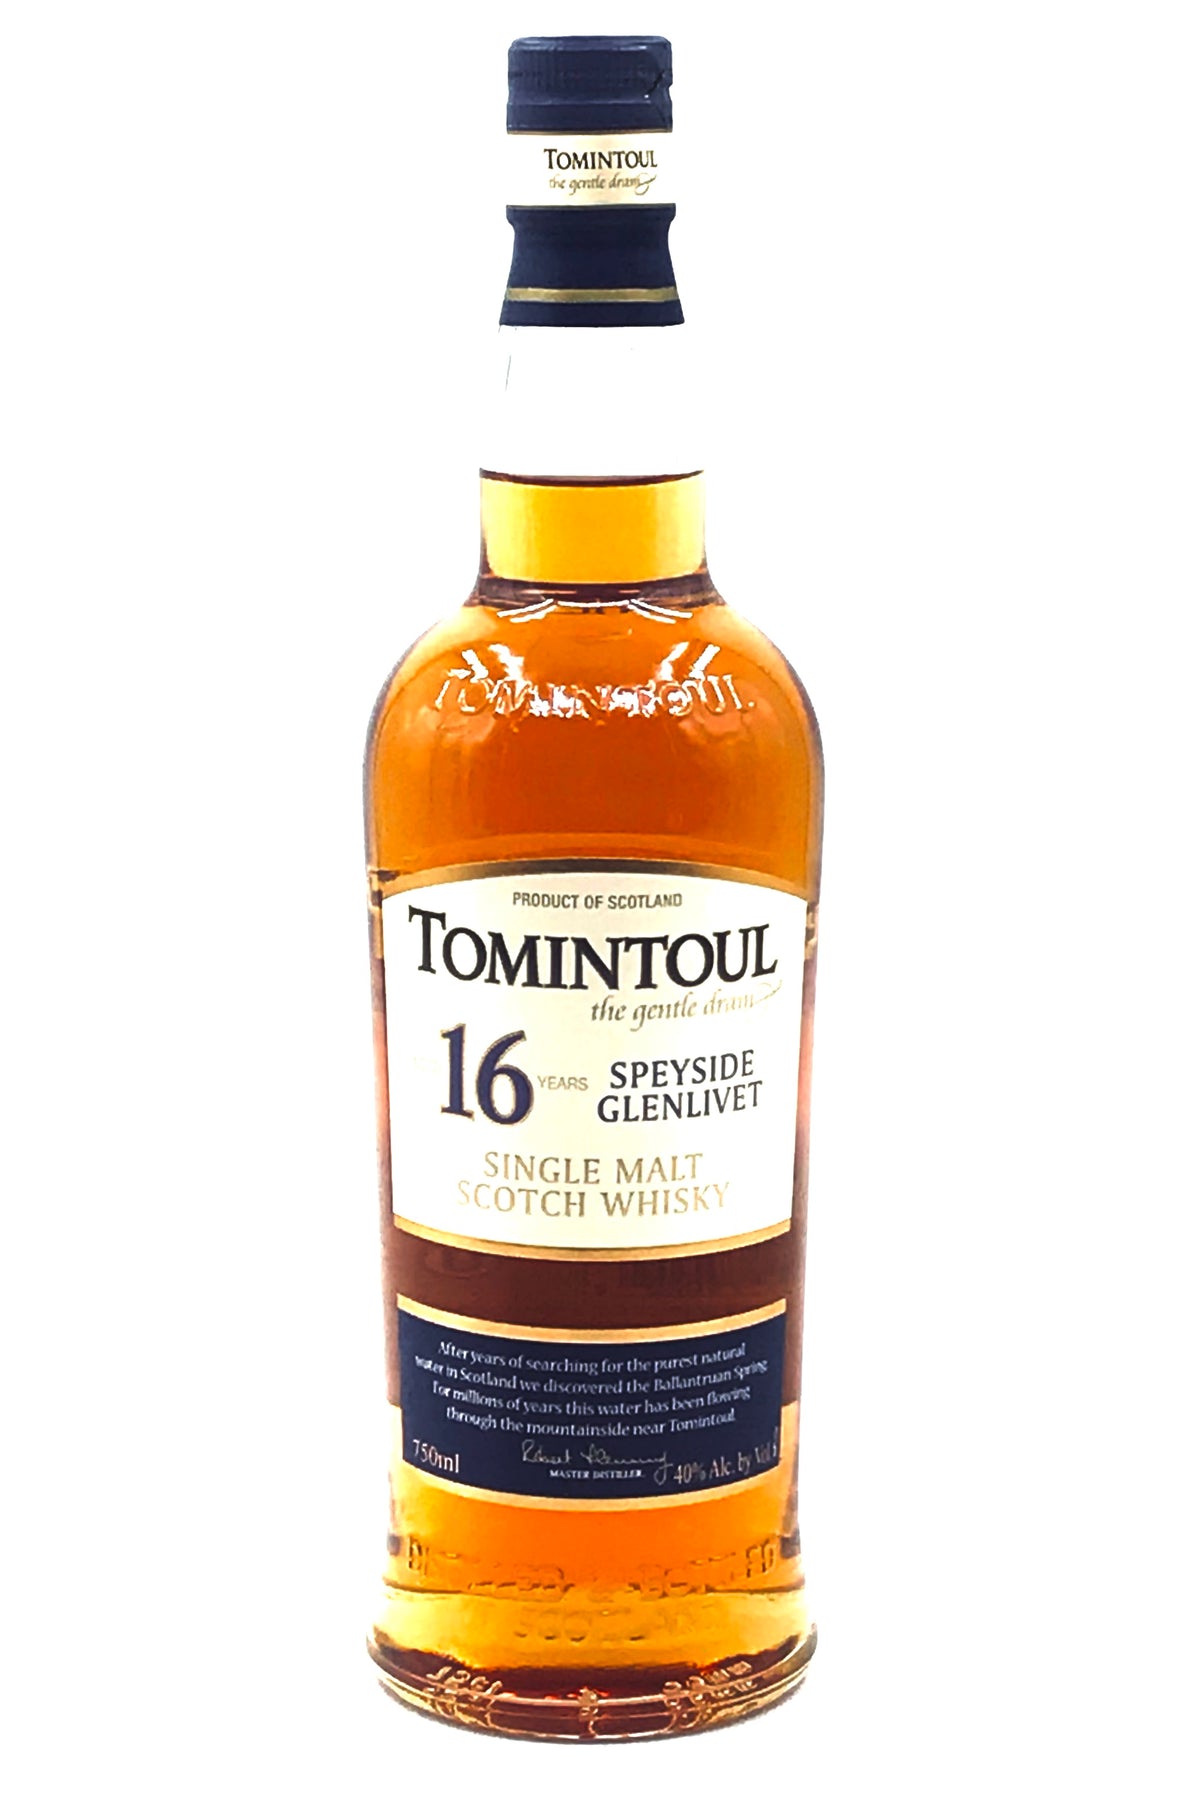 Tomintoul 16 Year Single Malt Scotch Whisky